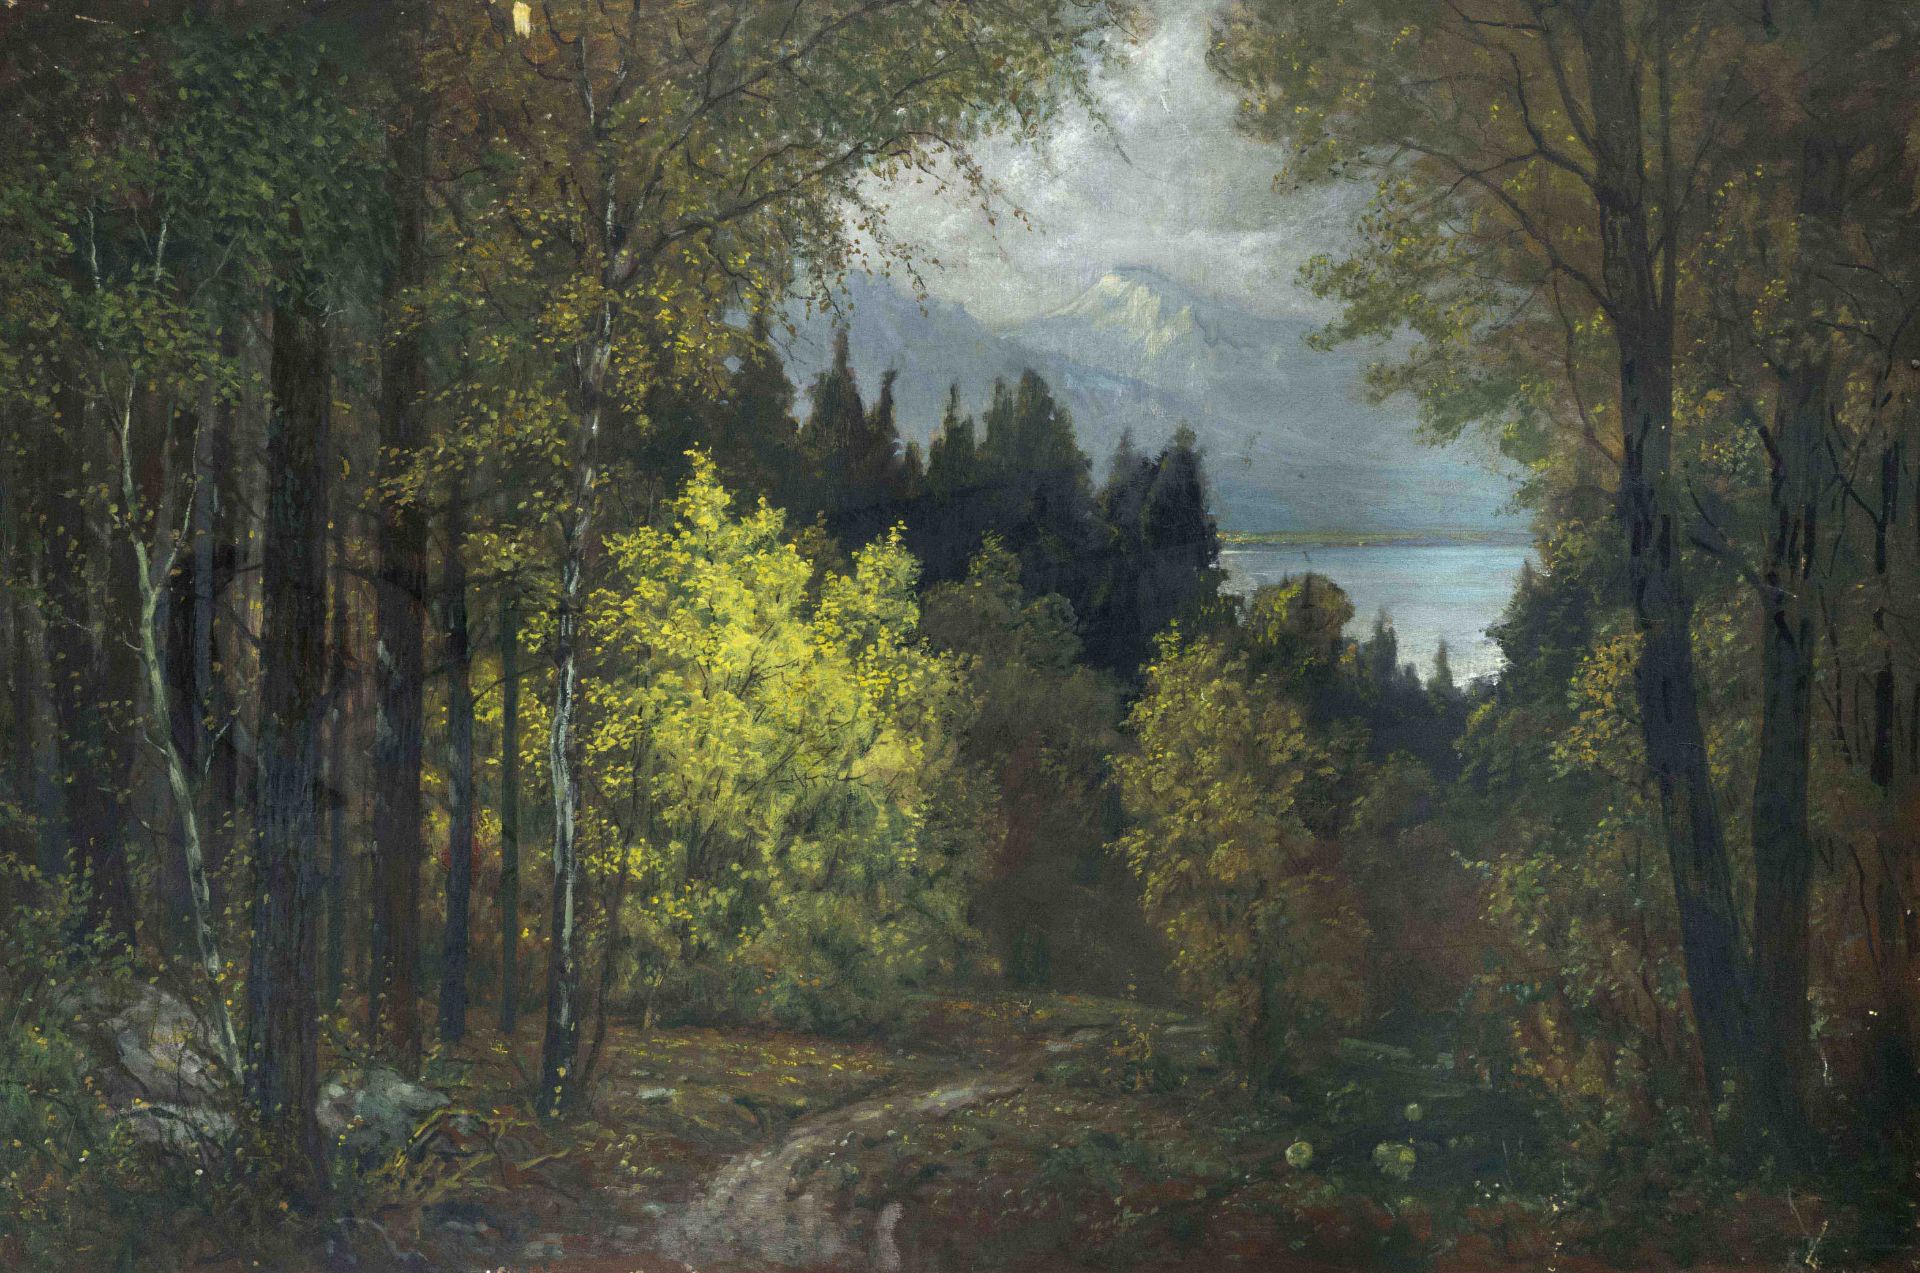 Robert Büchtger (1862-1951), Russian painter of German descent, studied in St. Petersburg under Ilya